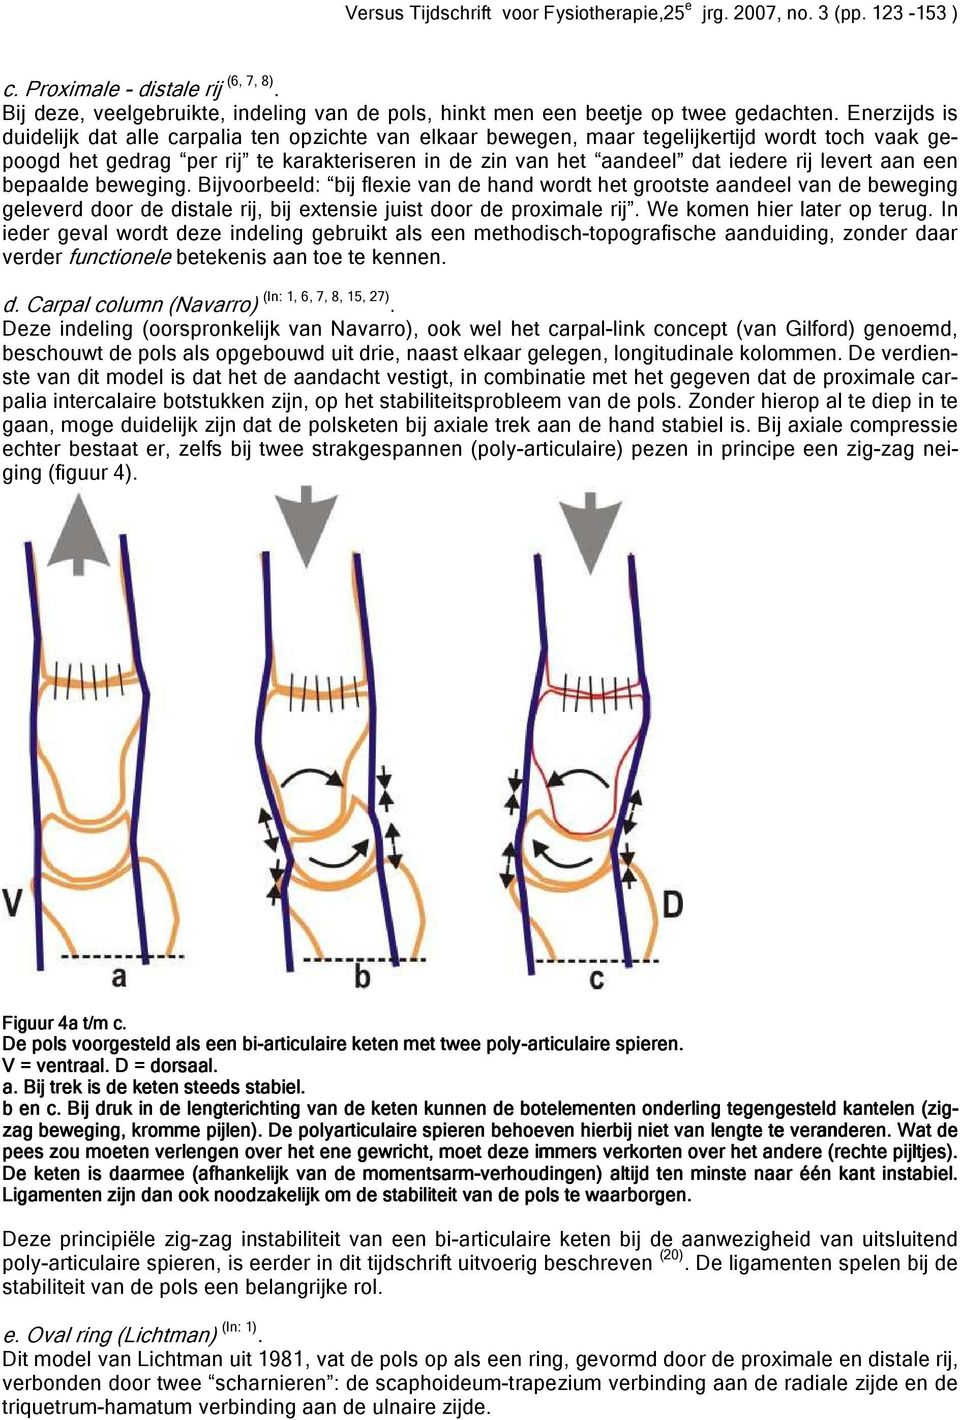 levert aan een bepaalde beweging. Bijvoorbeeld: bij flexie van de hand wordt het grootste aandeel van de beweging geleverd door de distale rij, bij extensie juist door de proximale rij.